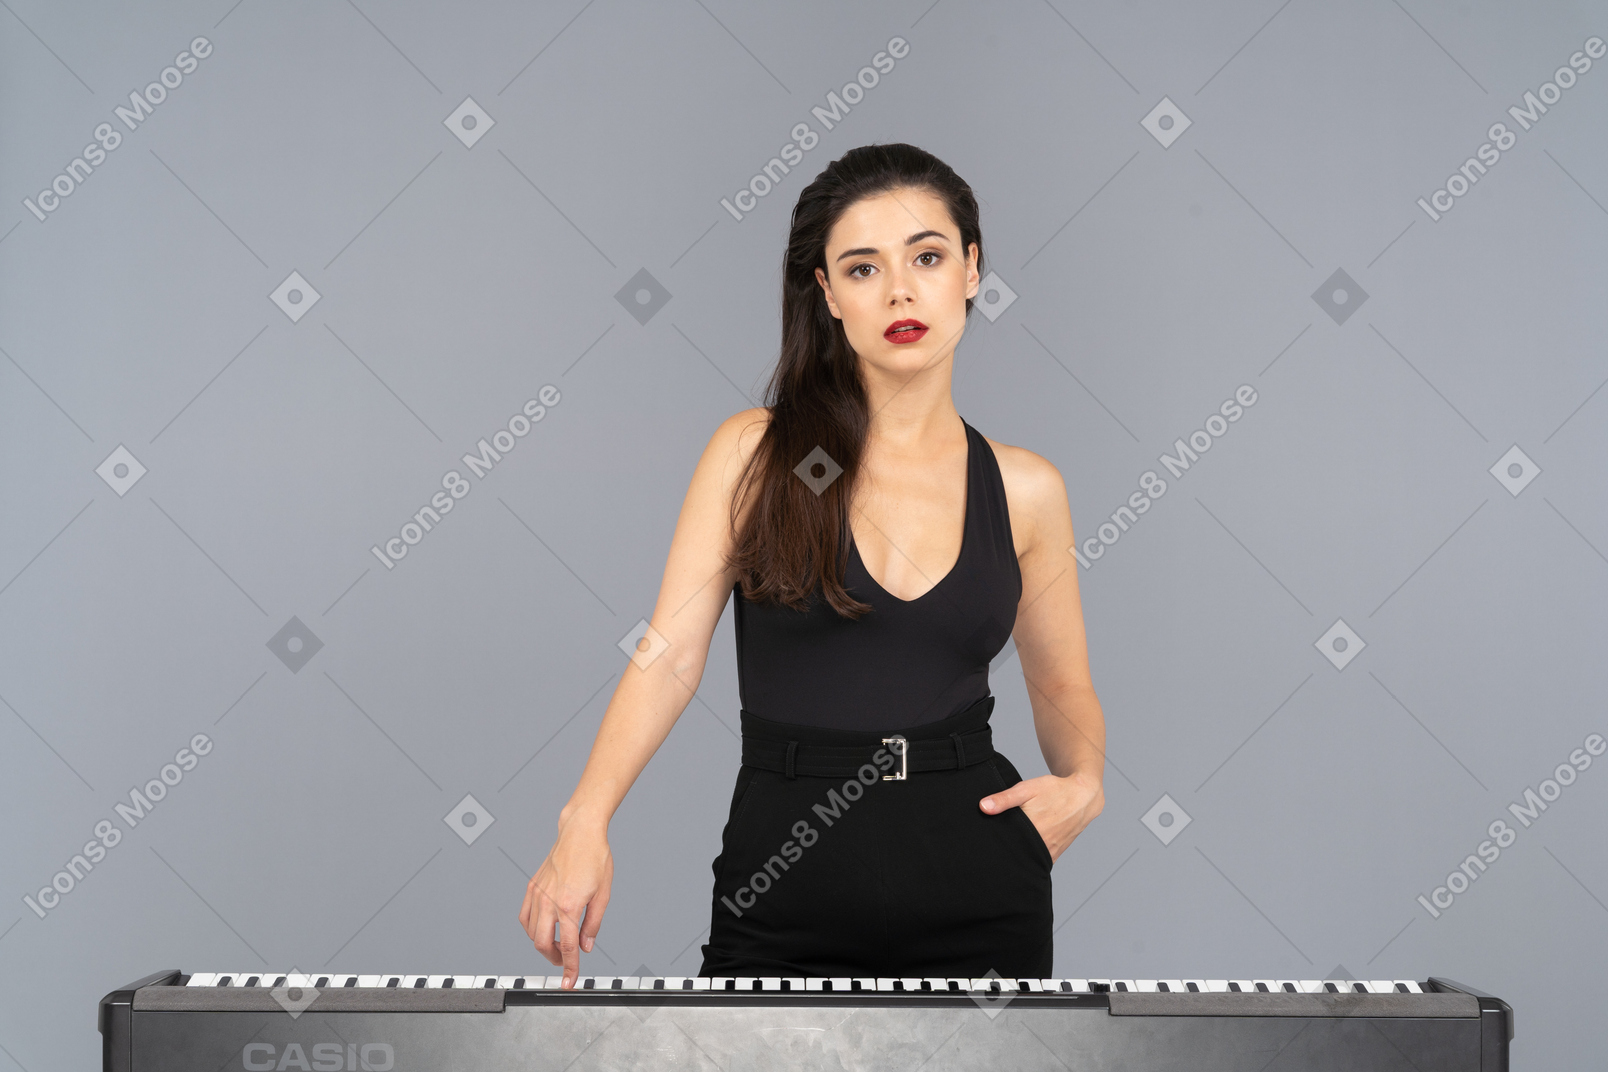 Vorderansicht einer jungen dame im schwarzen kleid, die die taste eines klaviers drückt